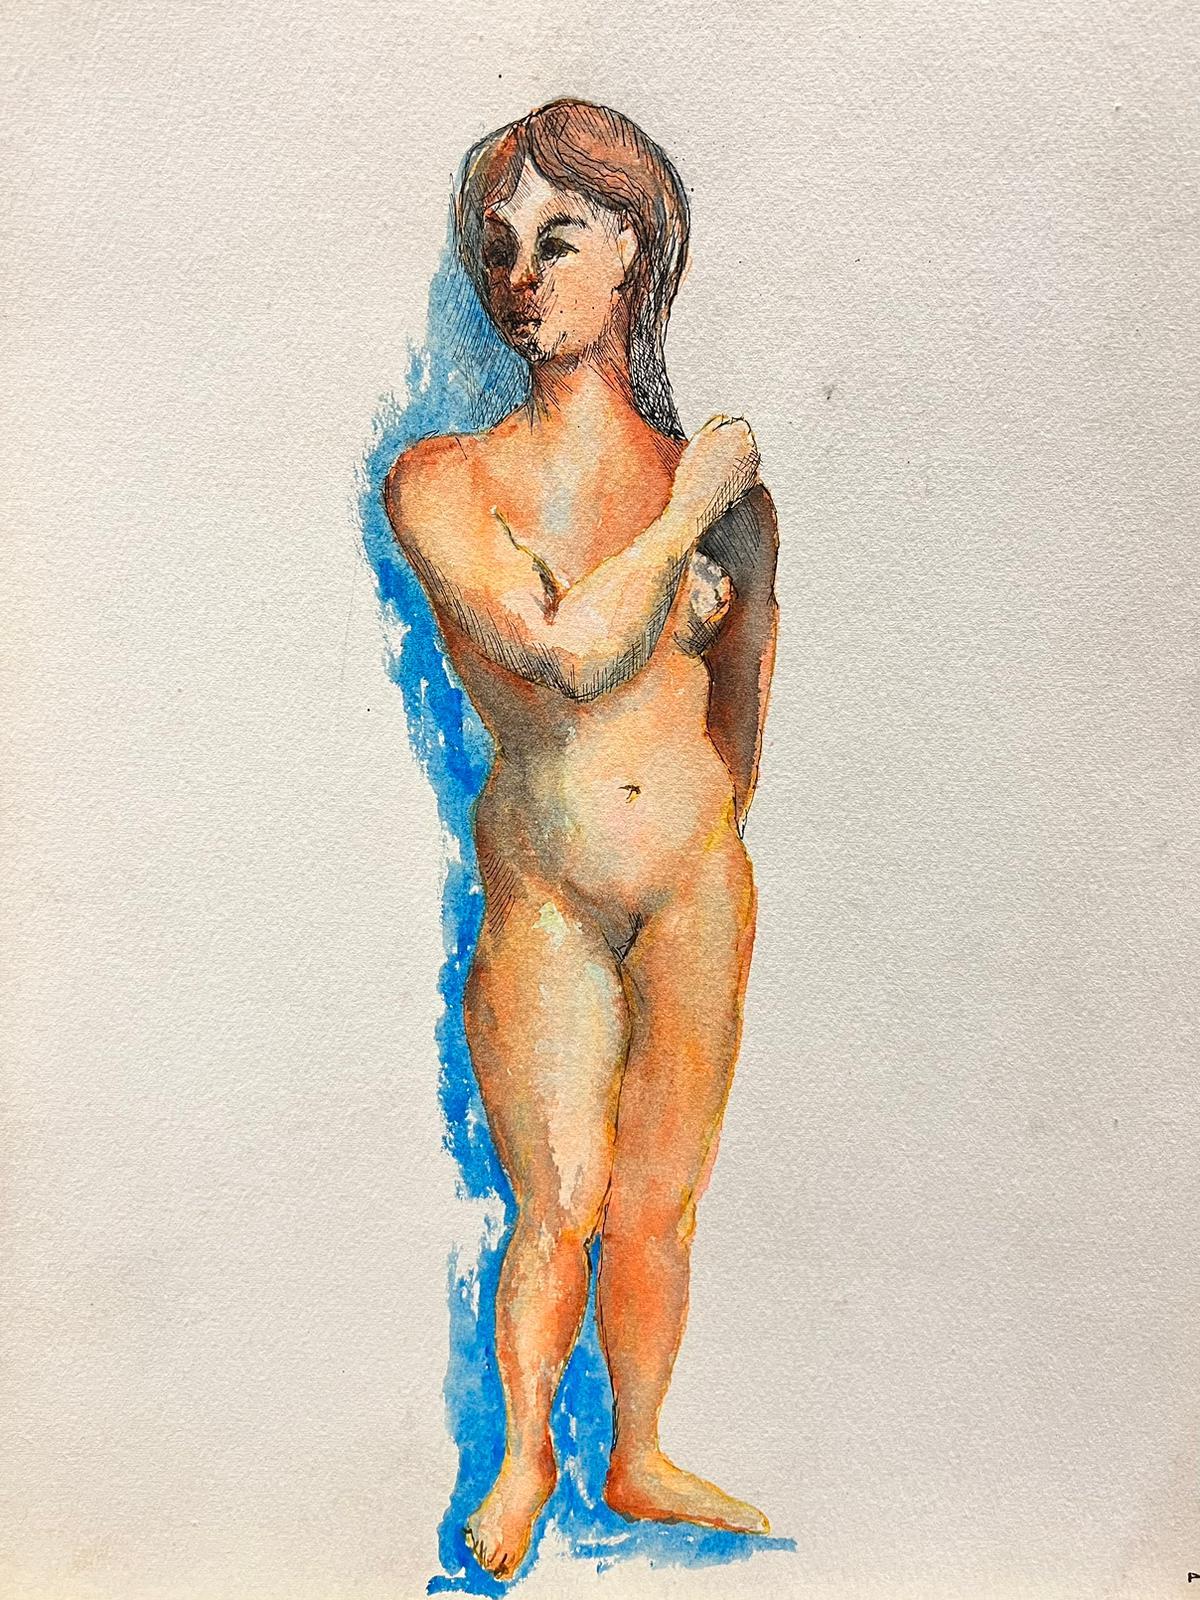 Nude Bernard Labbe - Portrait de femme nue moderniste/duubiste des annes 1950 avec ombre bleue